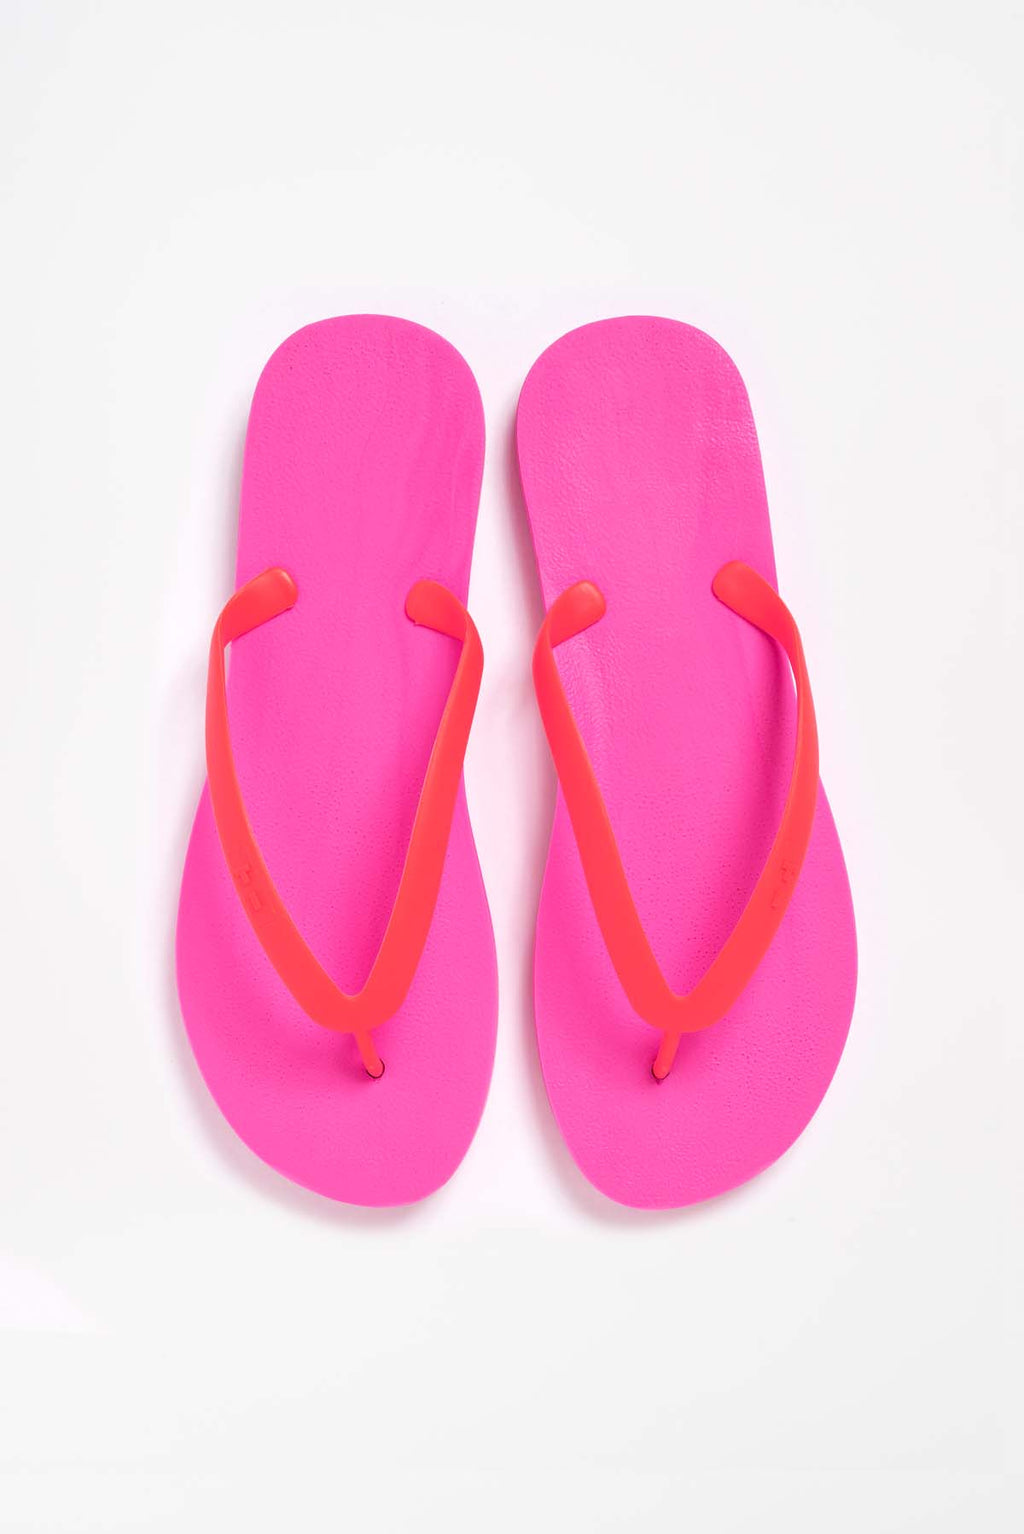 mens novelty slippers asda